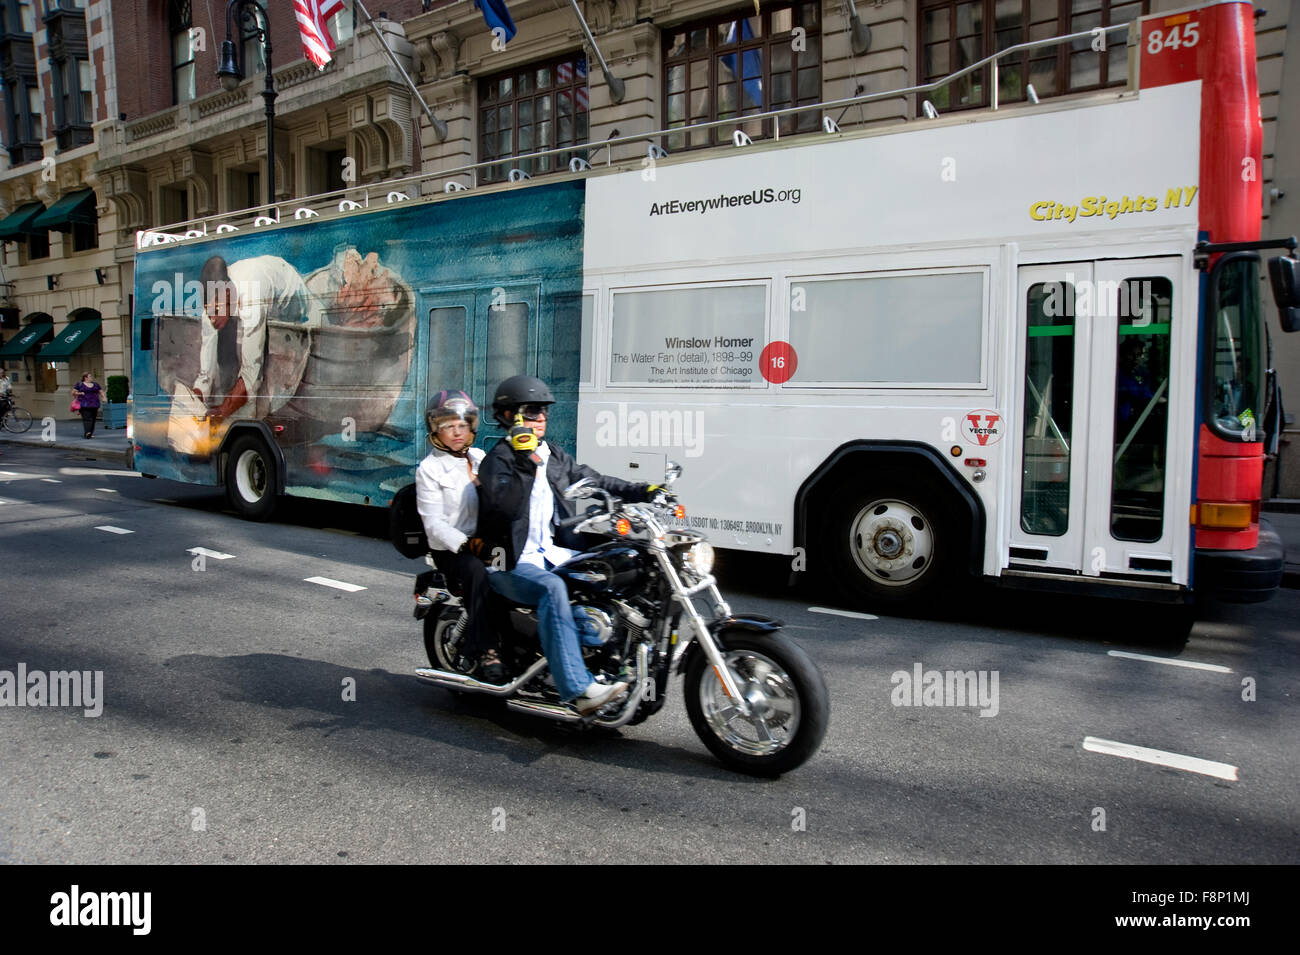 Un Winslow Homer peinture est reproduit sur un autobus d'excursion dans la ville de New York dans le cadre de l'art partout/ événement. Banque D'Images